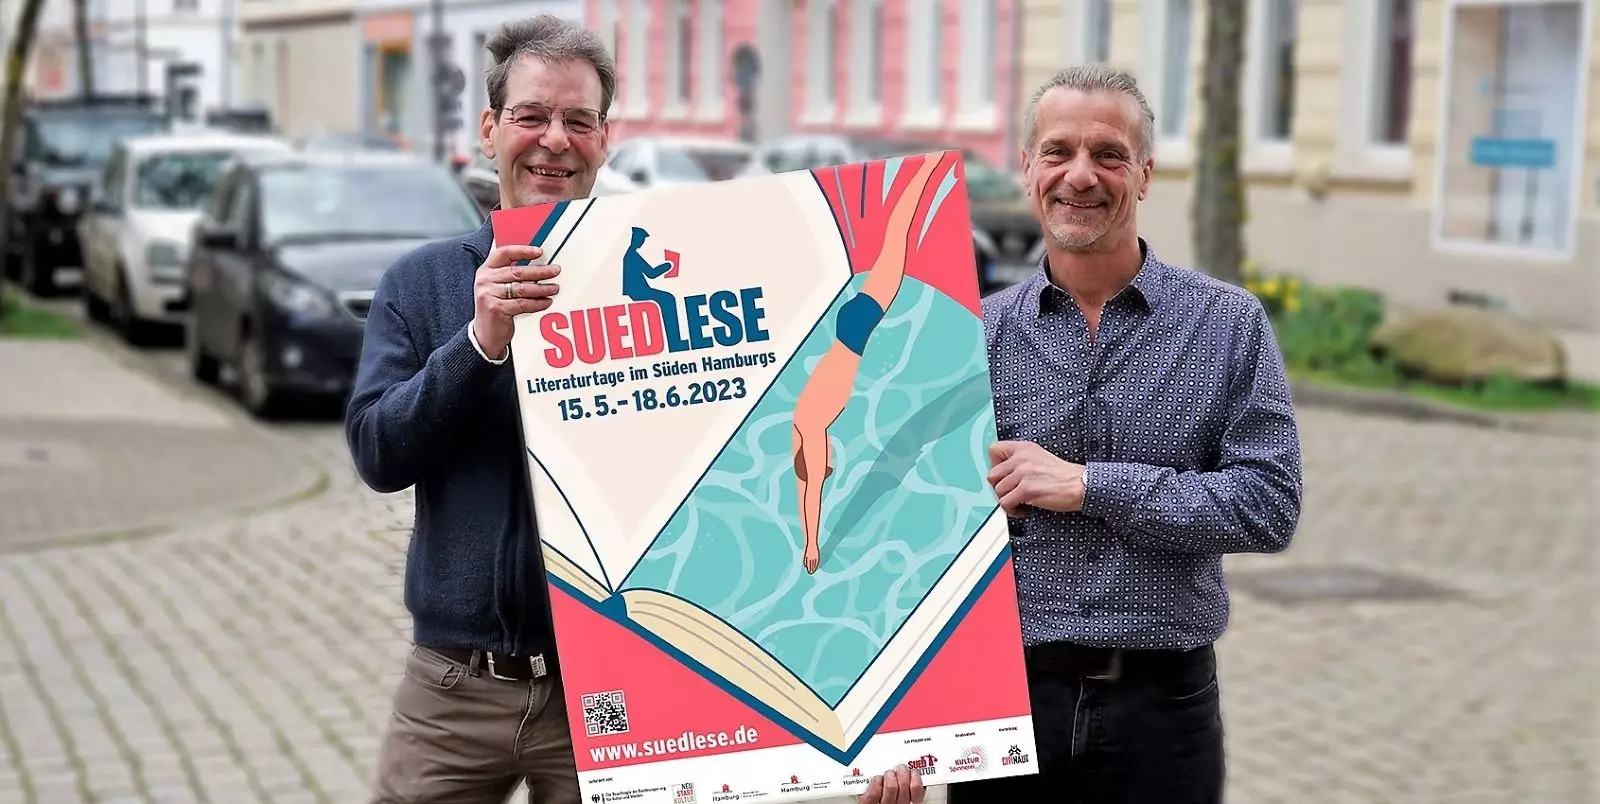 Freuen sich auf die Suedlese: Heiko Langanke (links) und Jörn Waßmund.  Foto: S. Schnell